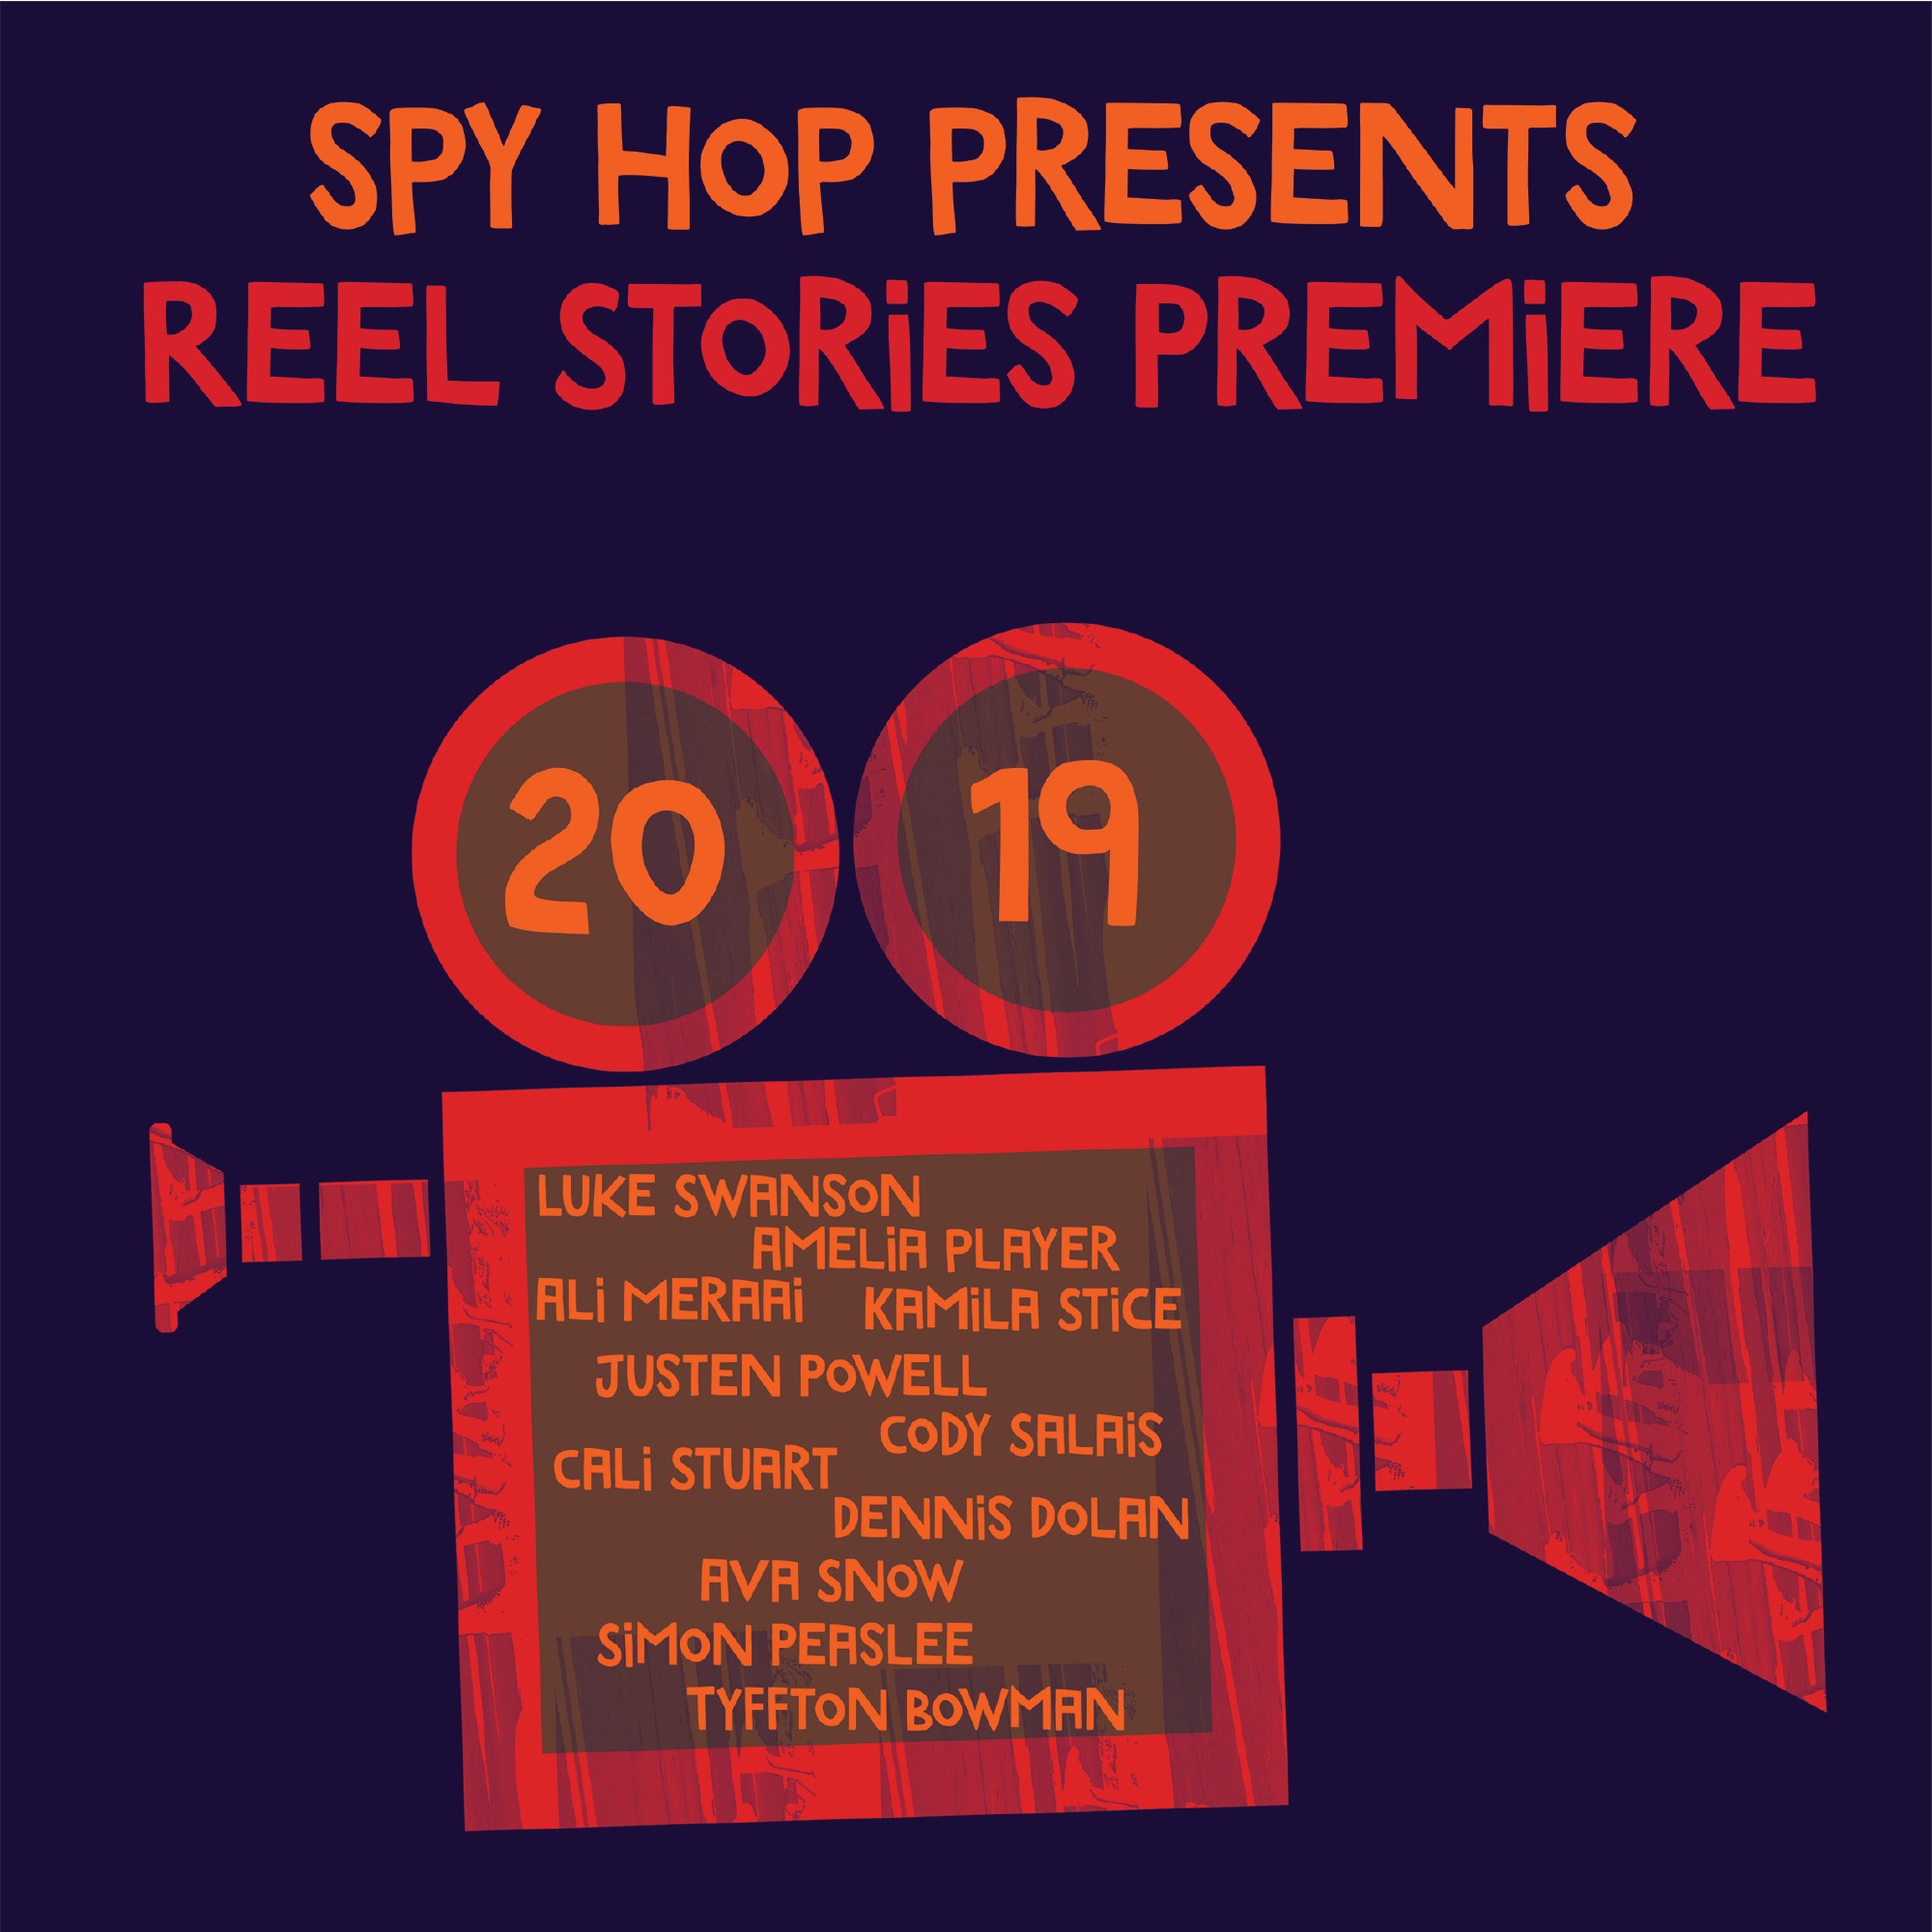 2019 Reel Stories Premiere - Spy Hop